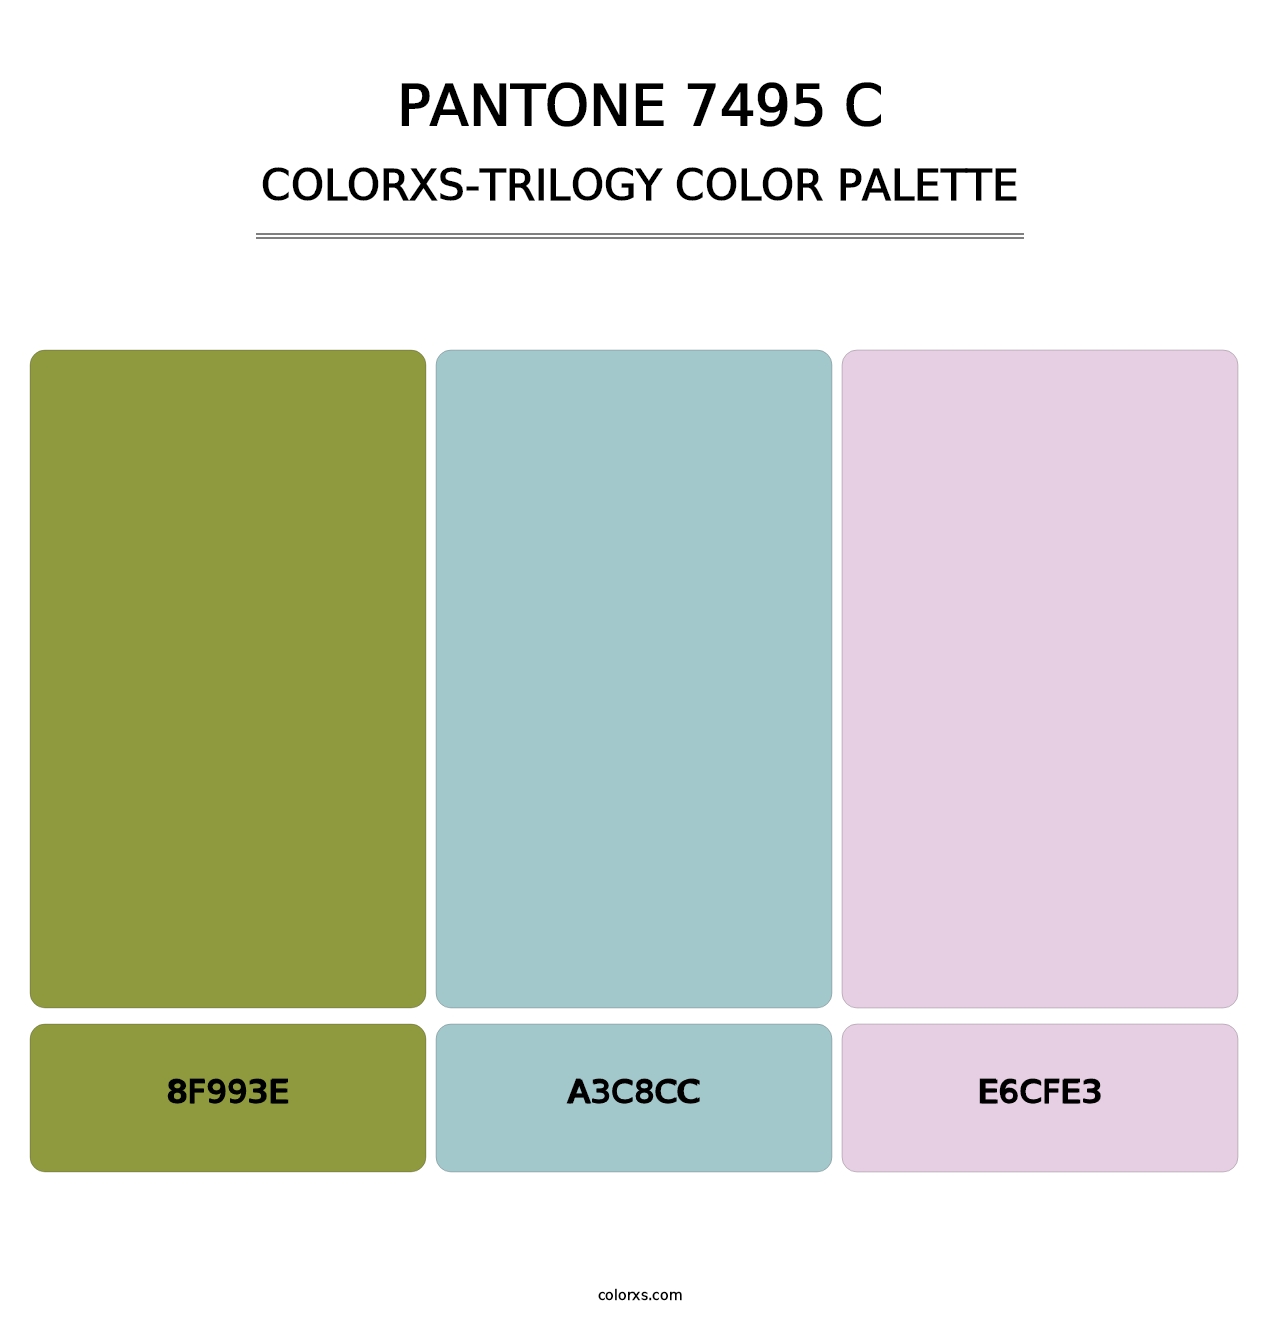 PANTONE 7495 C - Colorxs Trilogy Palette